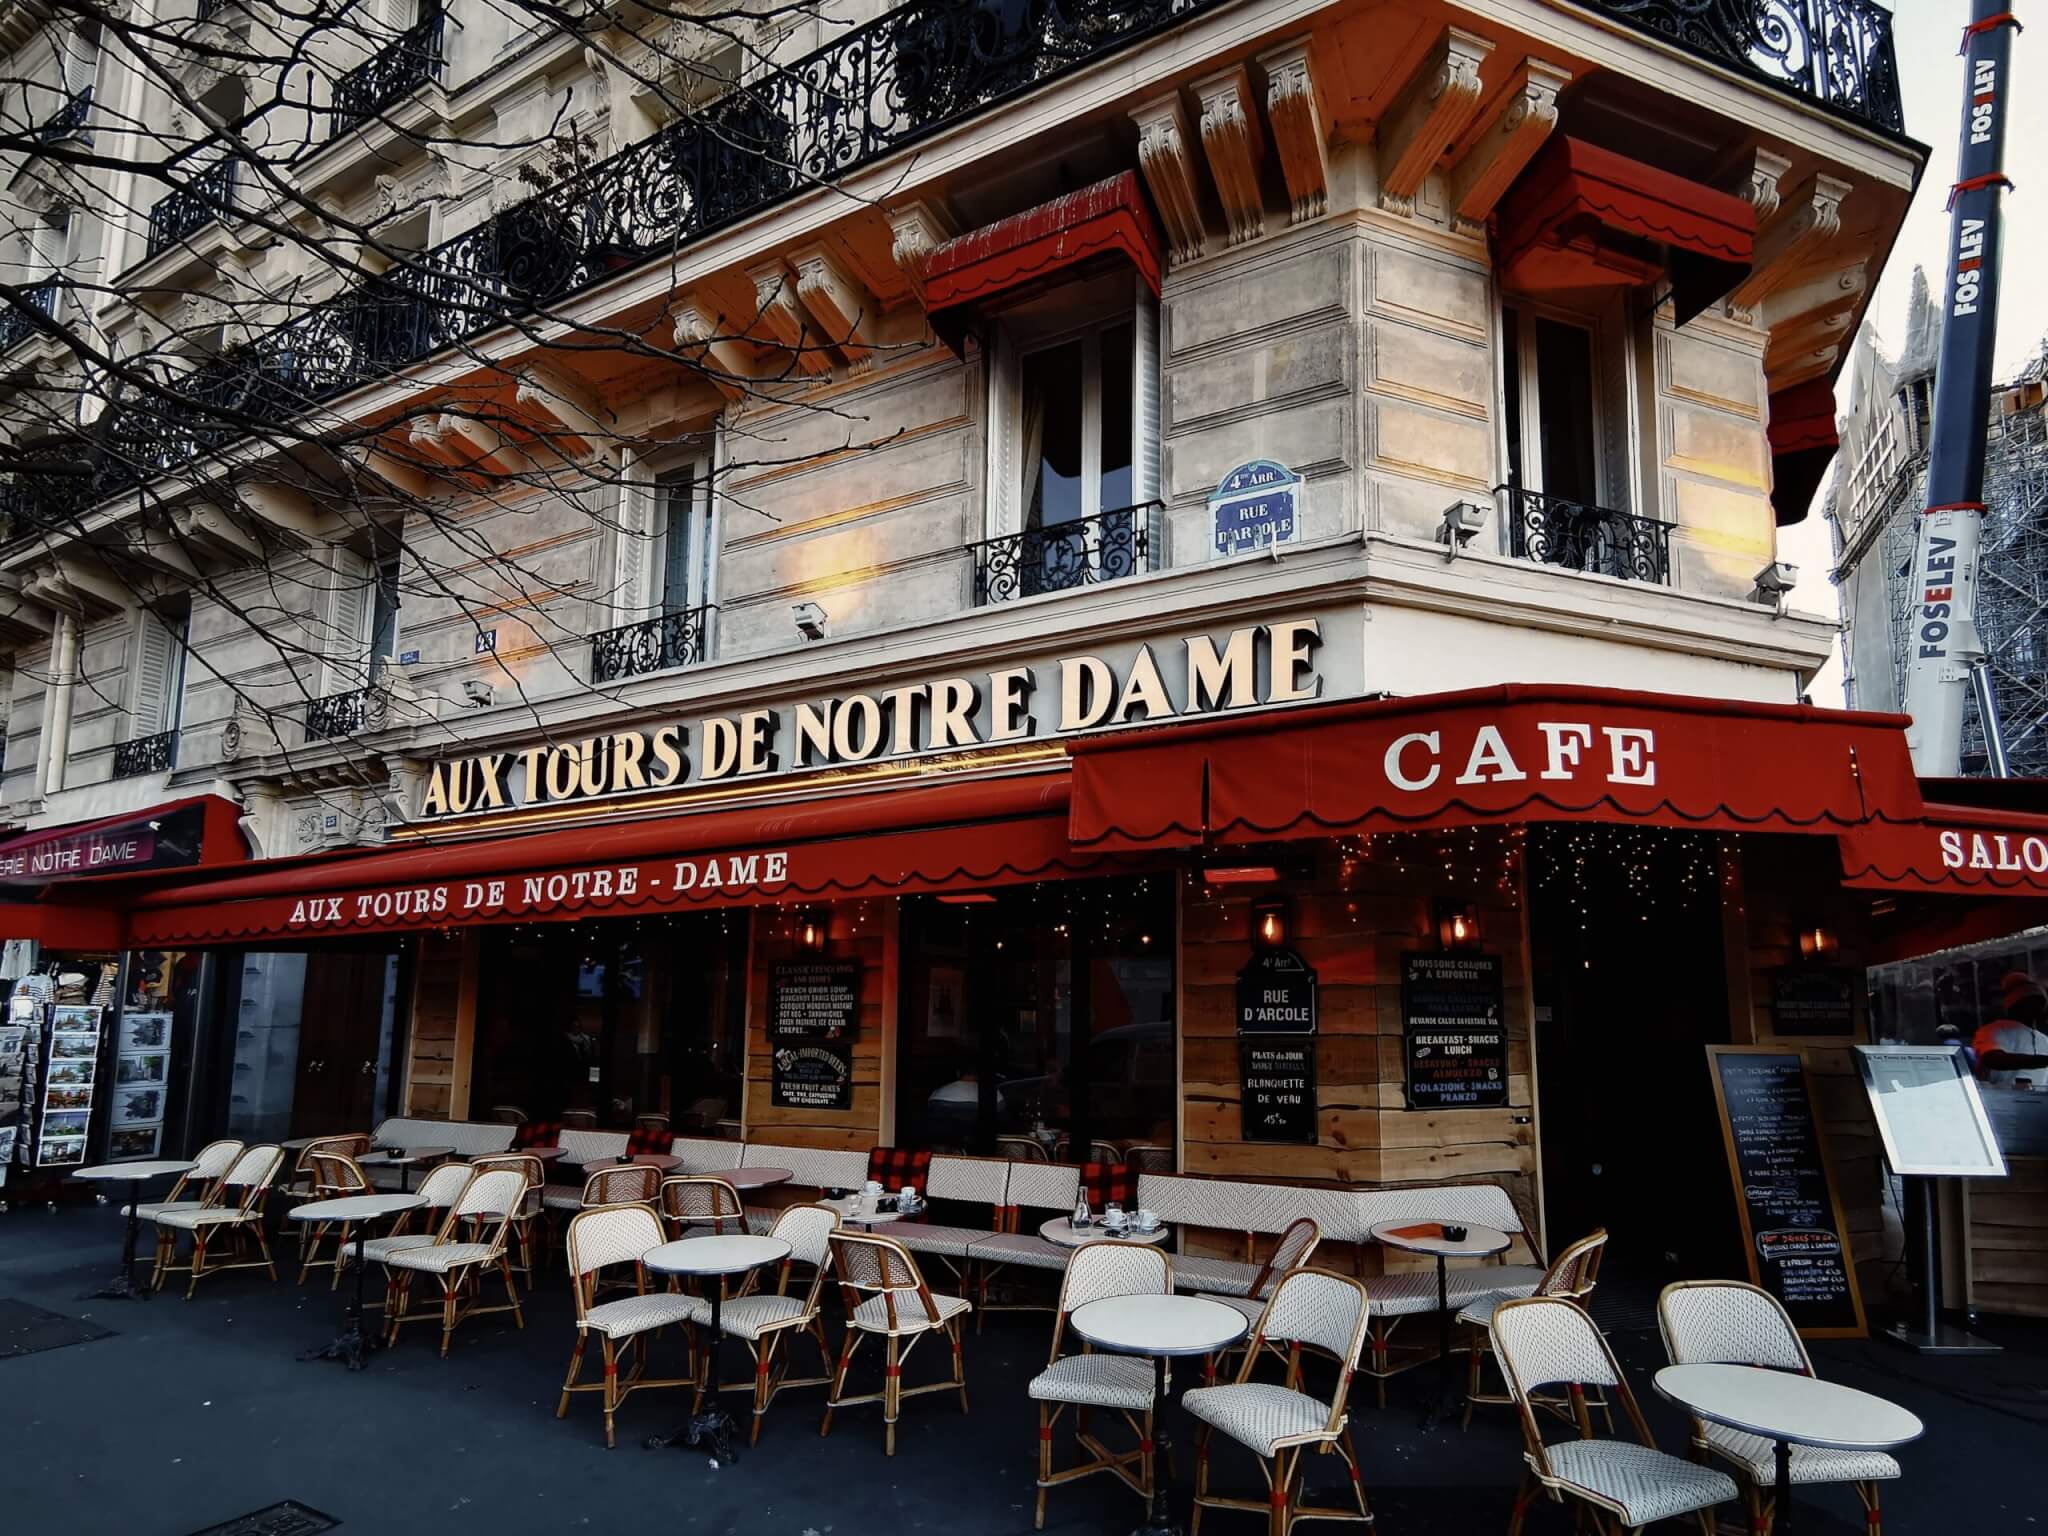 Cafe in paris